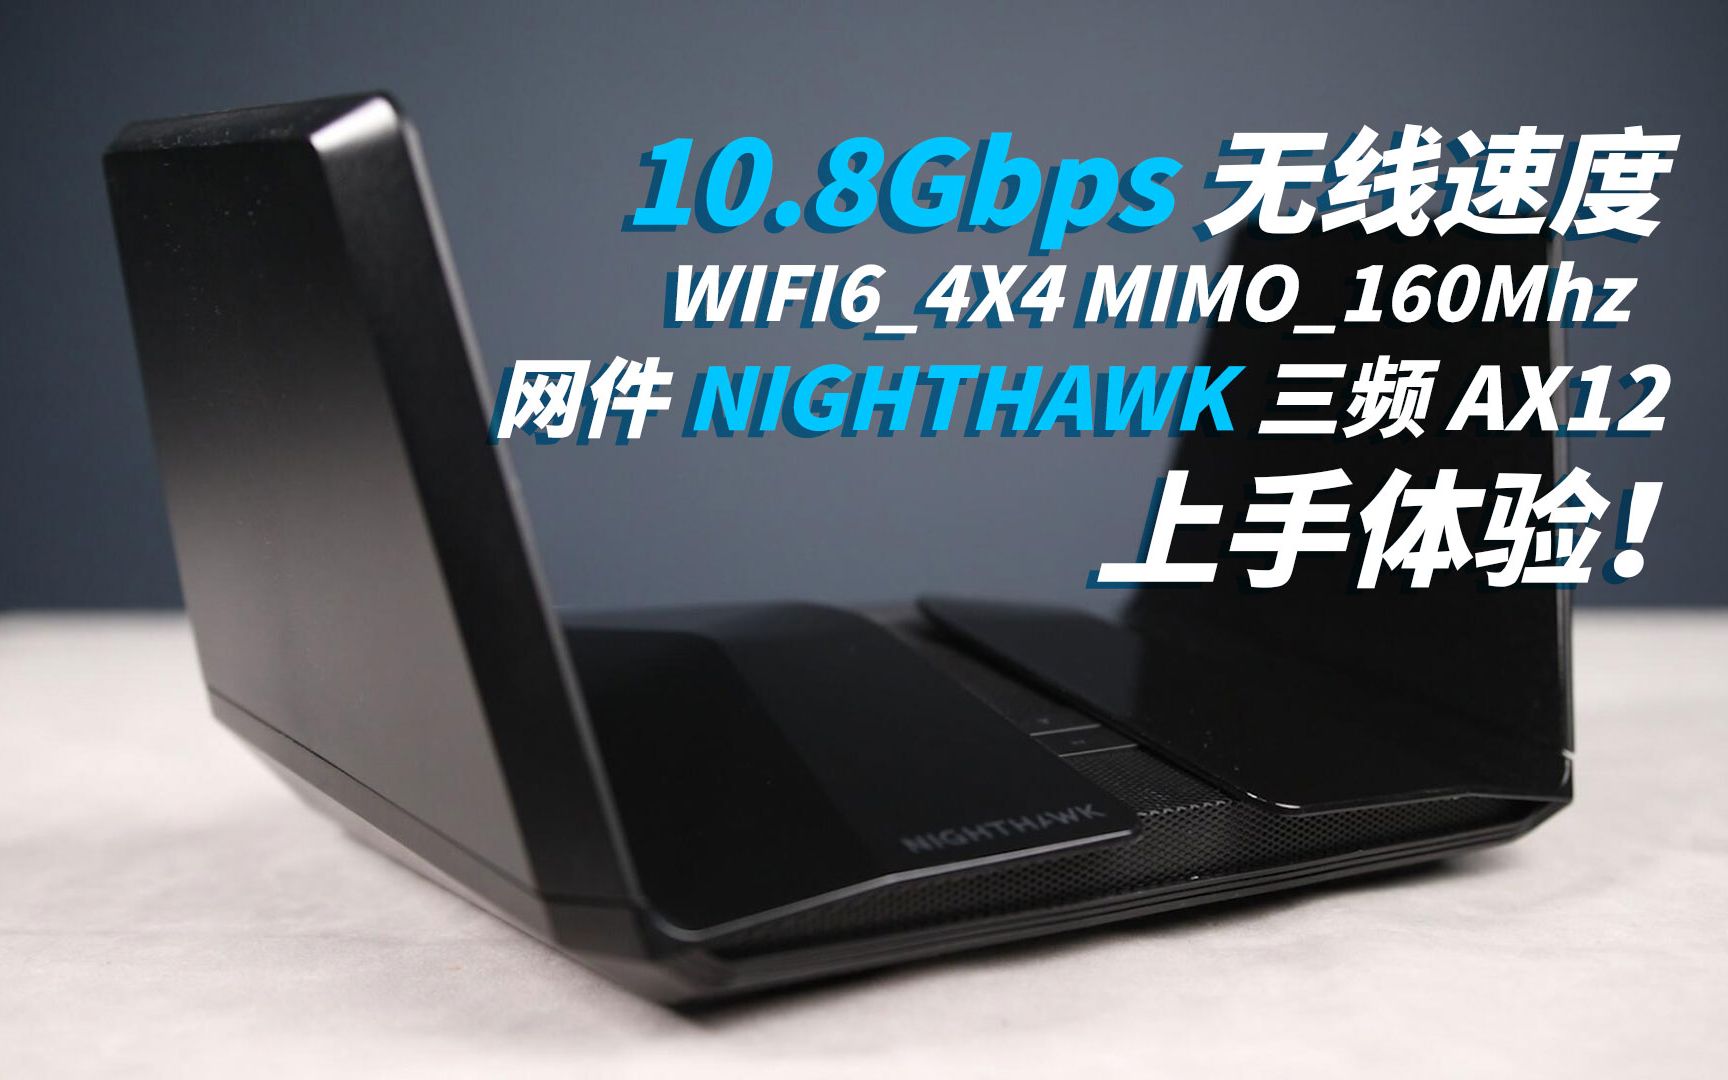 【司波图】10.8Gbps无线连接速度？！网件 NIGHTHAWK 三频 AX12（RAX200）无线路由器上手体验！